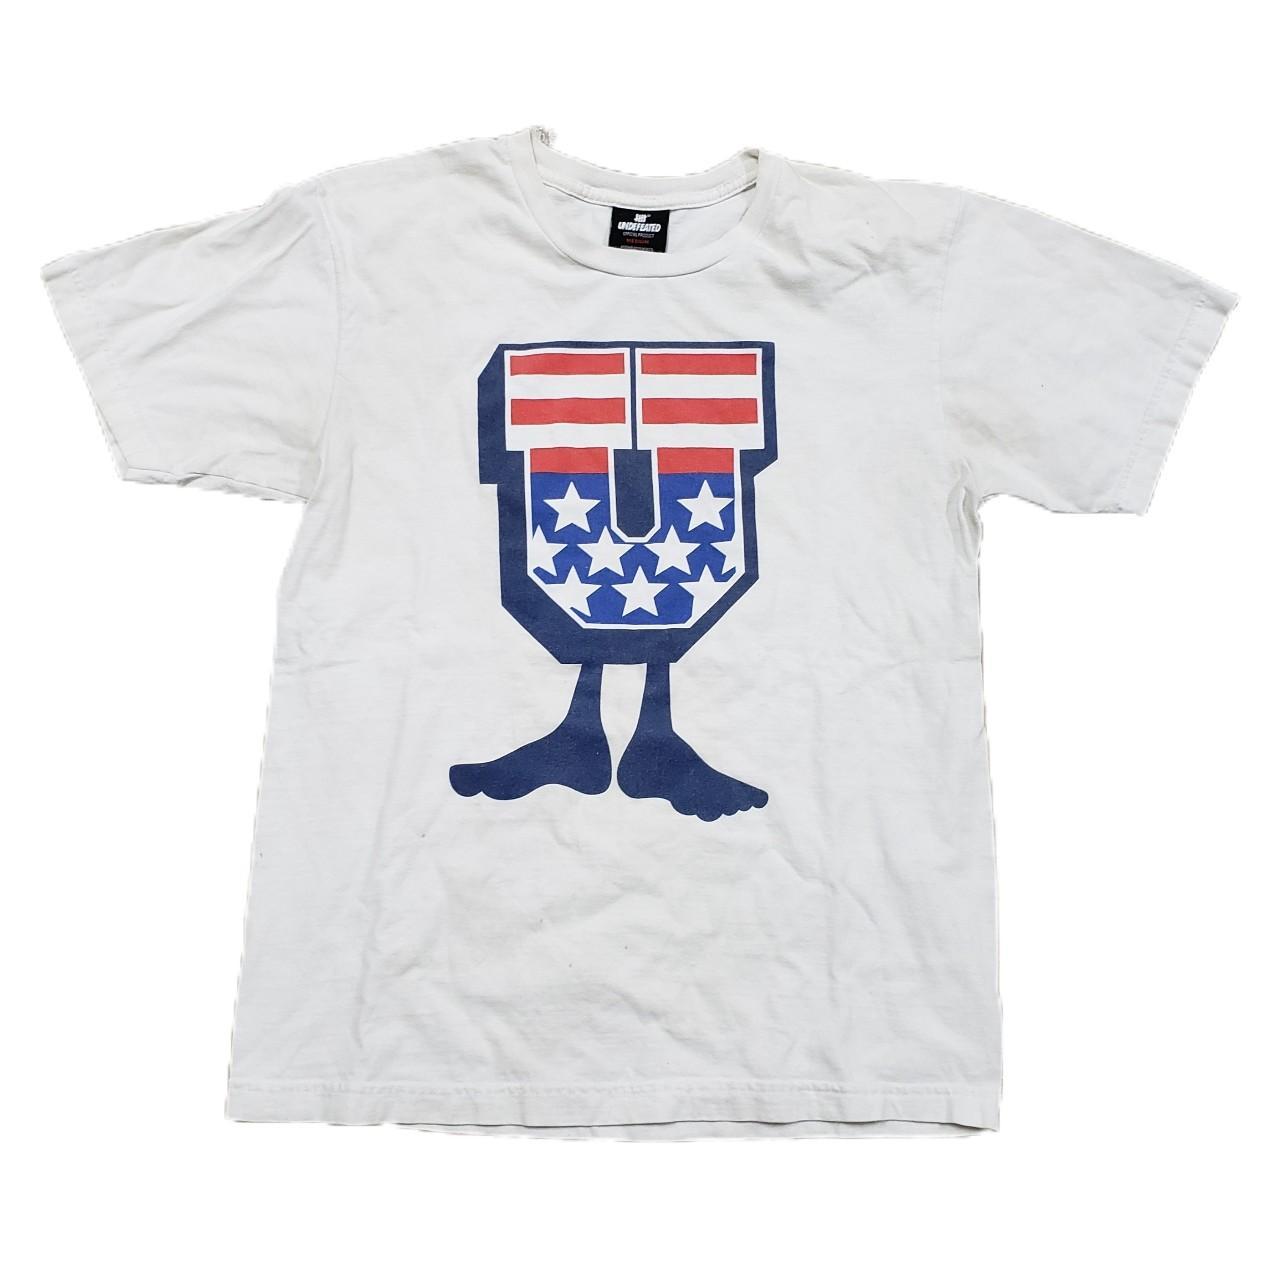 Product Image 1 - Men's Undefeated T-shirt 

Size: Medium